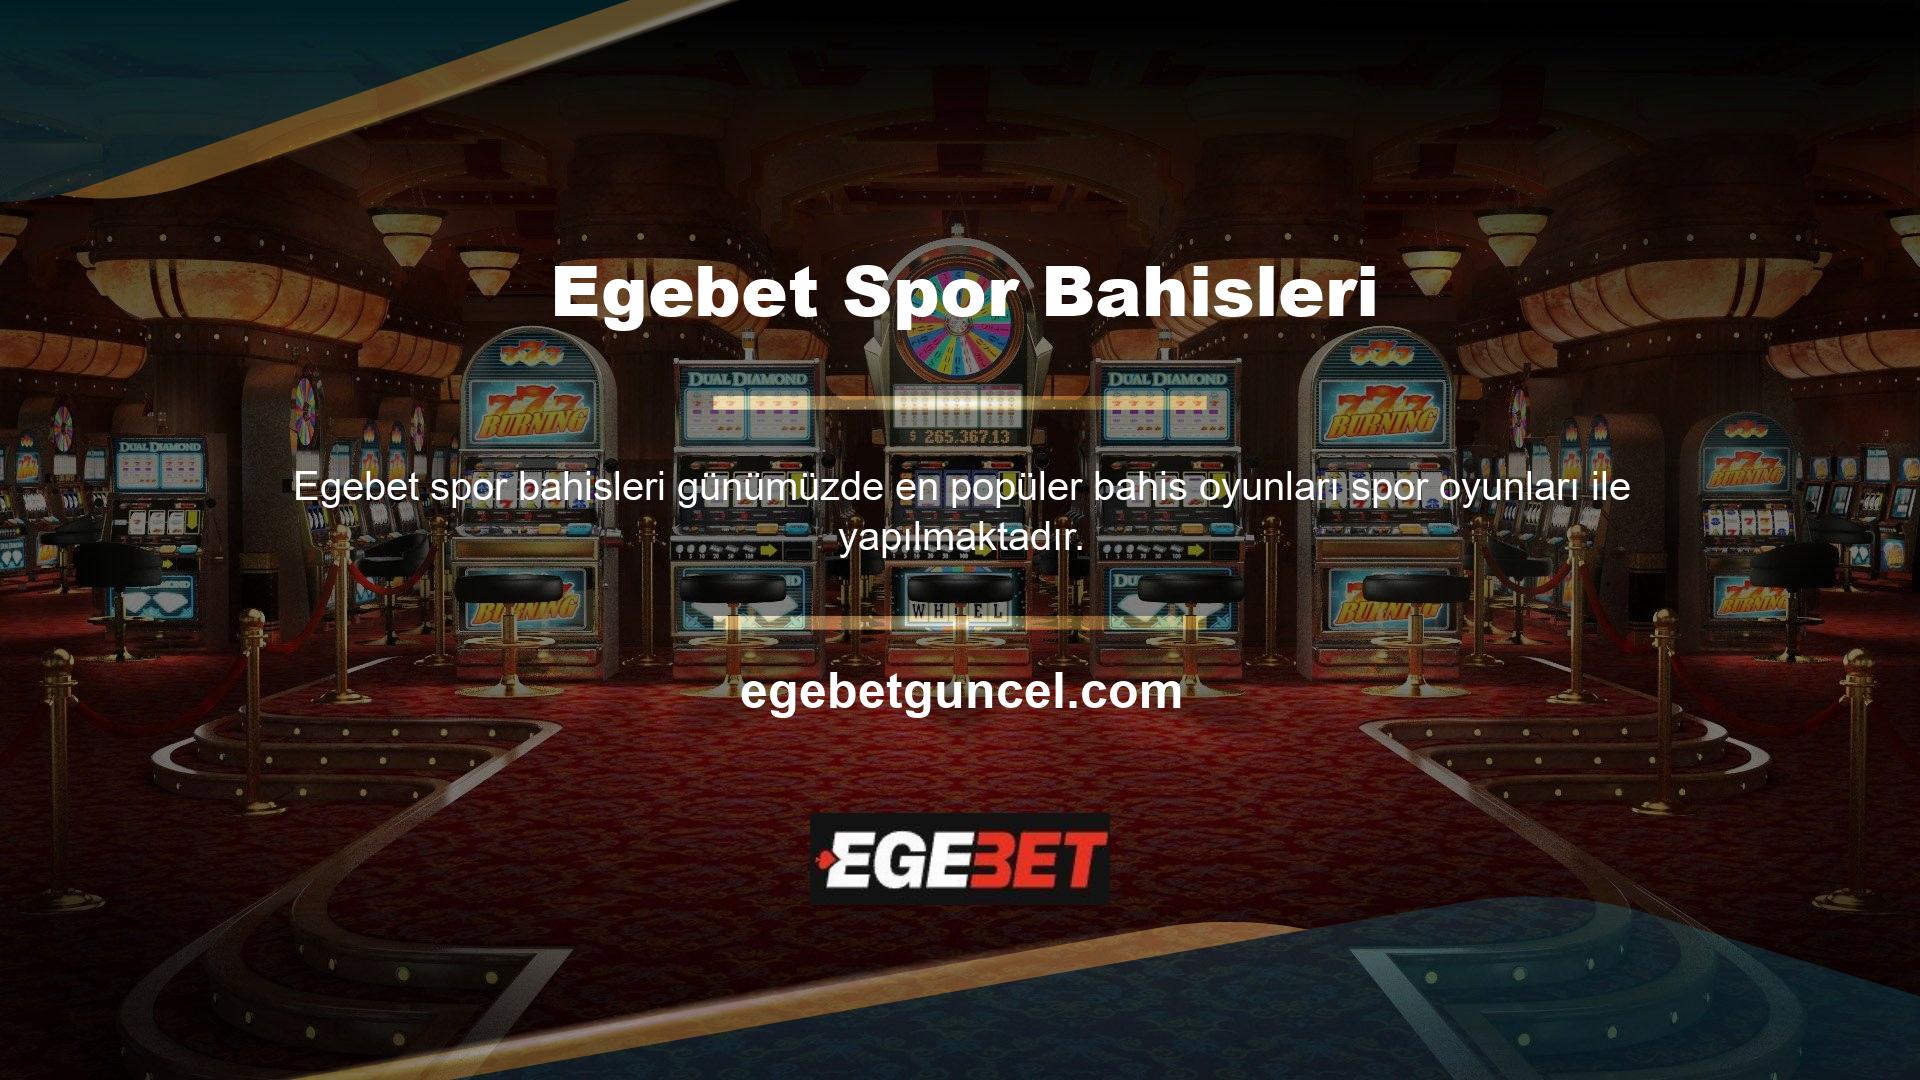 Egebet Sportsbook, üyelerine çeşitli spor dallarında çok çeşitli bahis oyunları sunmaktadır